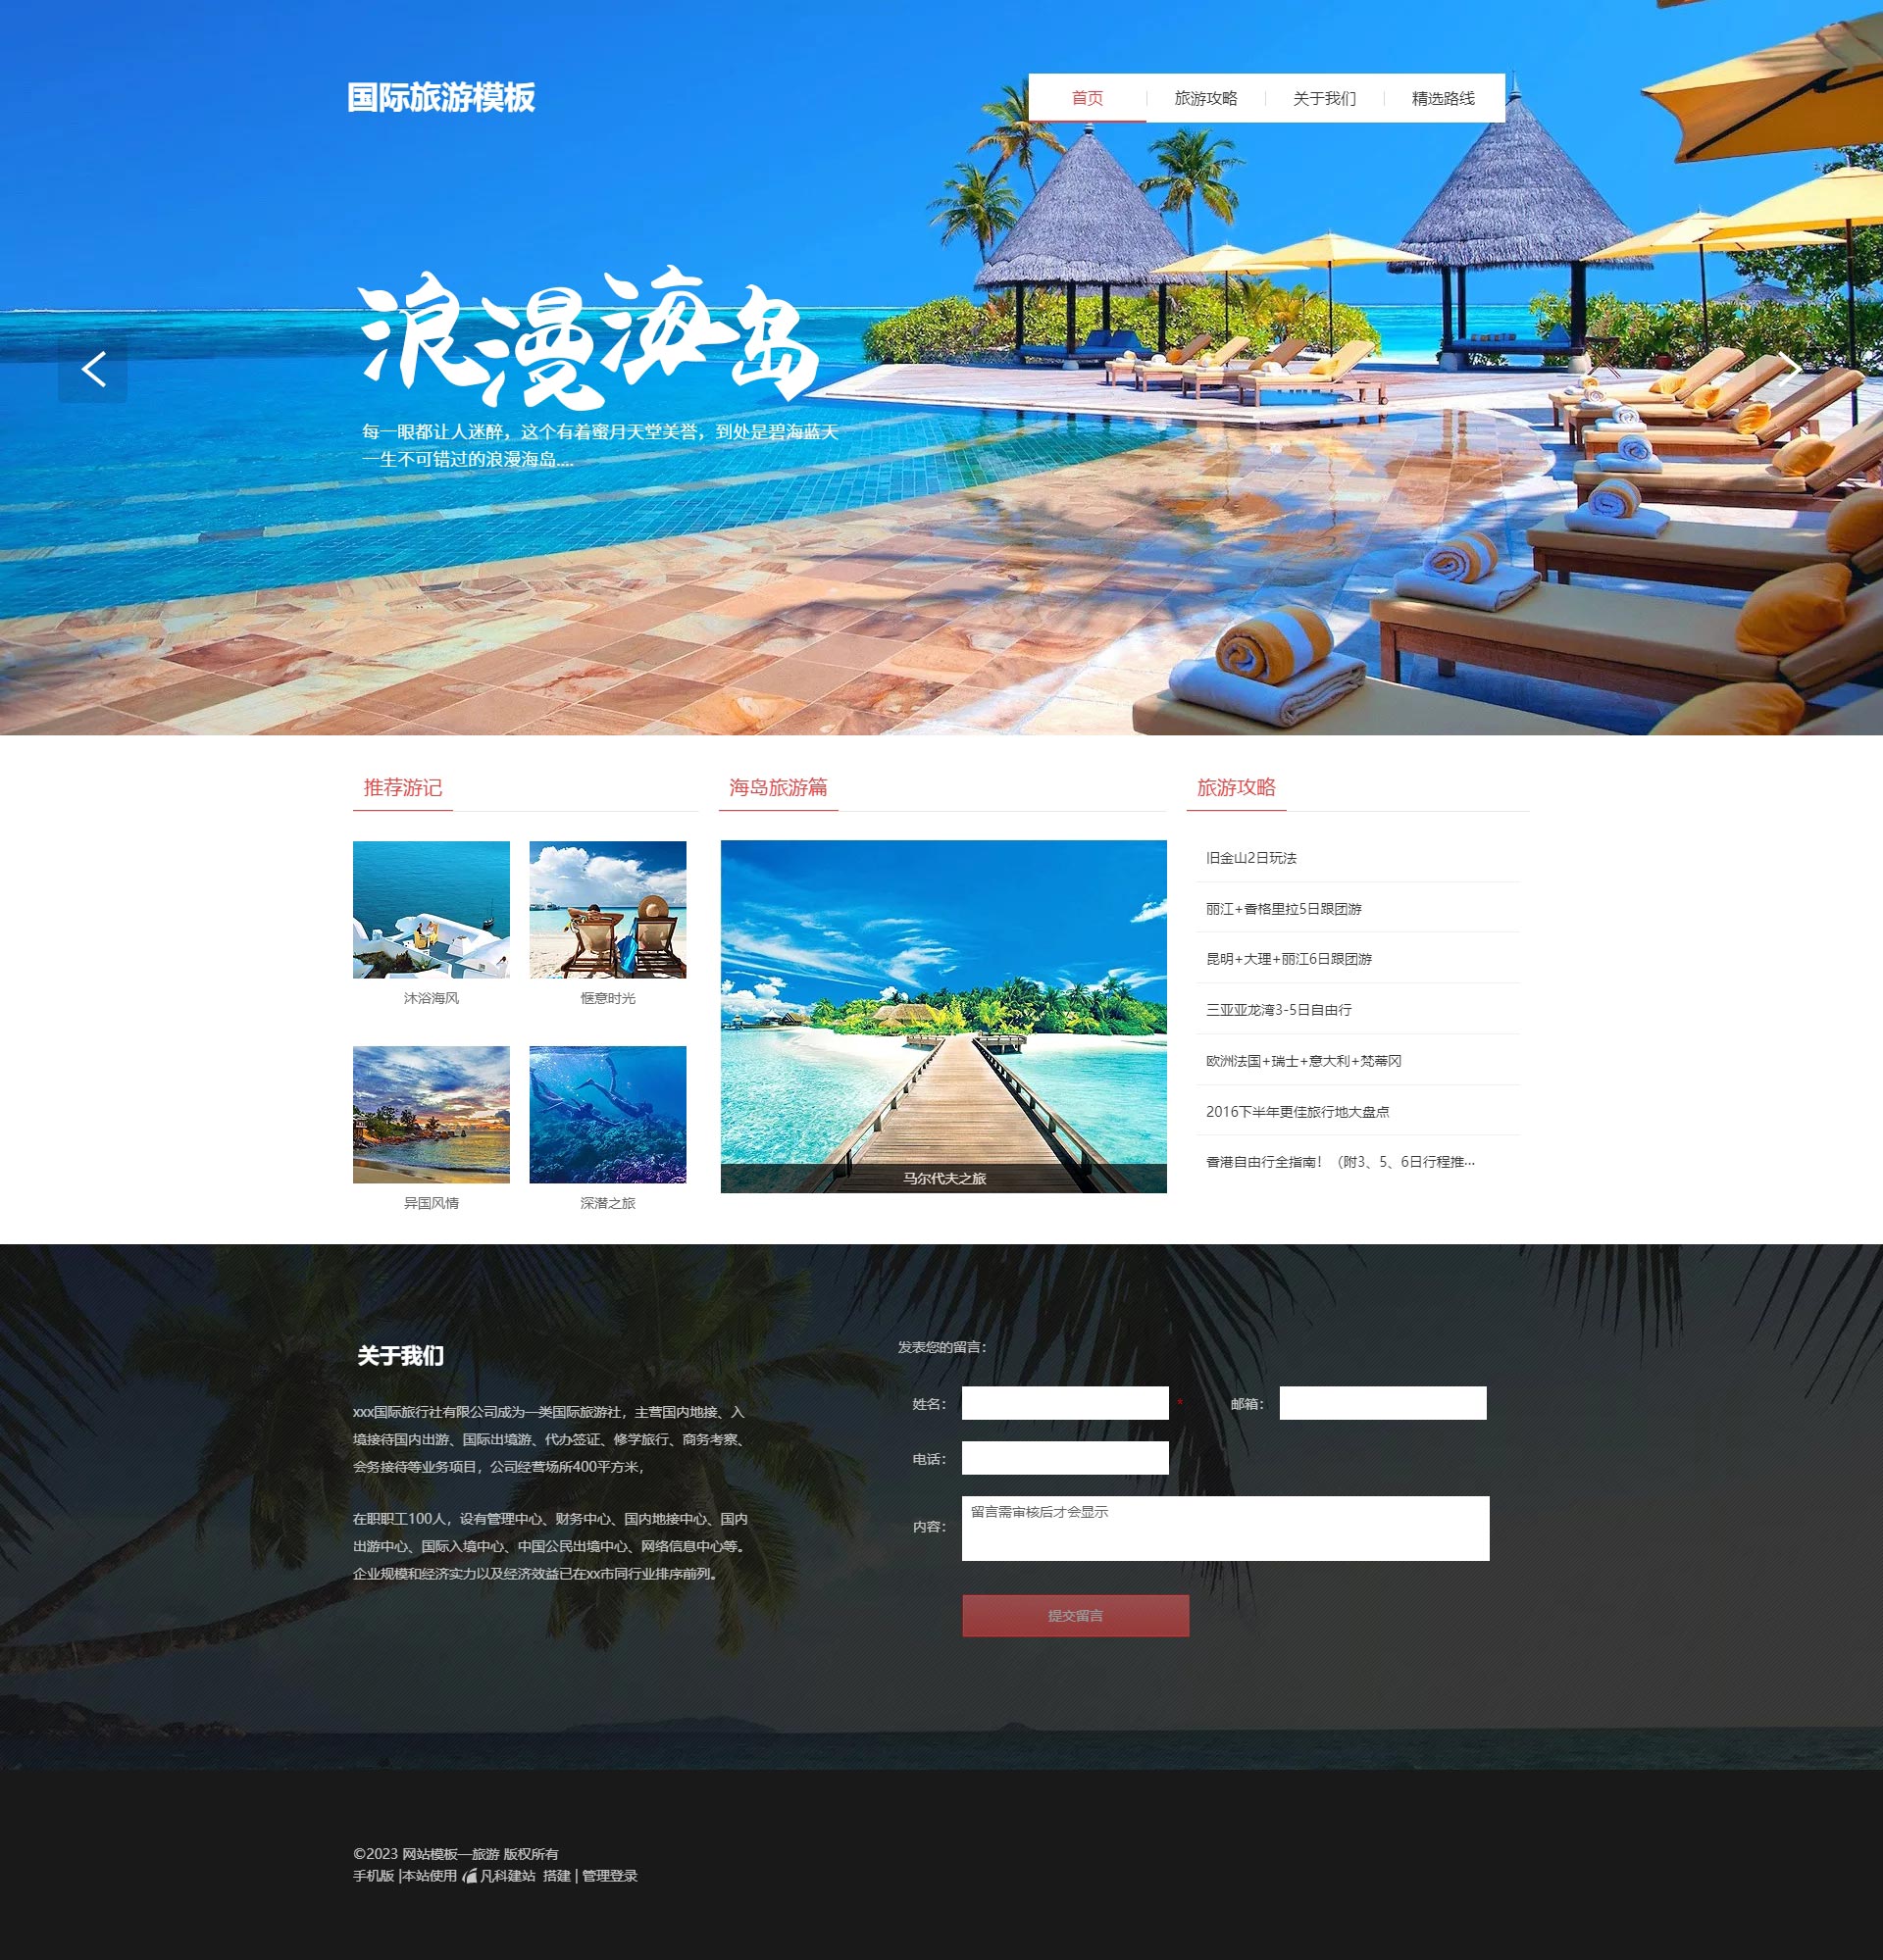 创意海岛游境外游网站模板